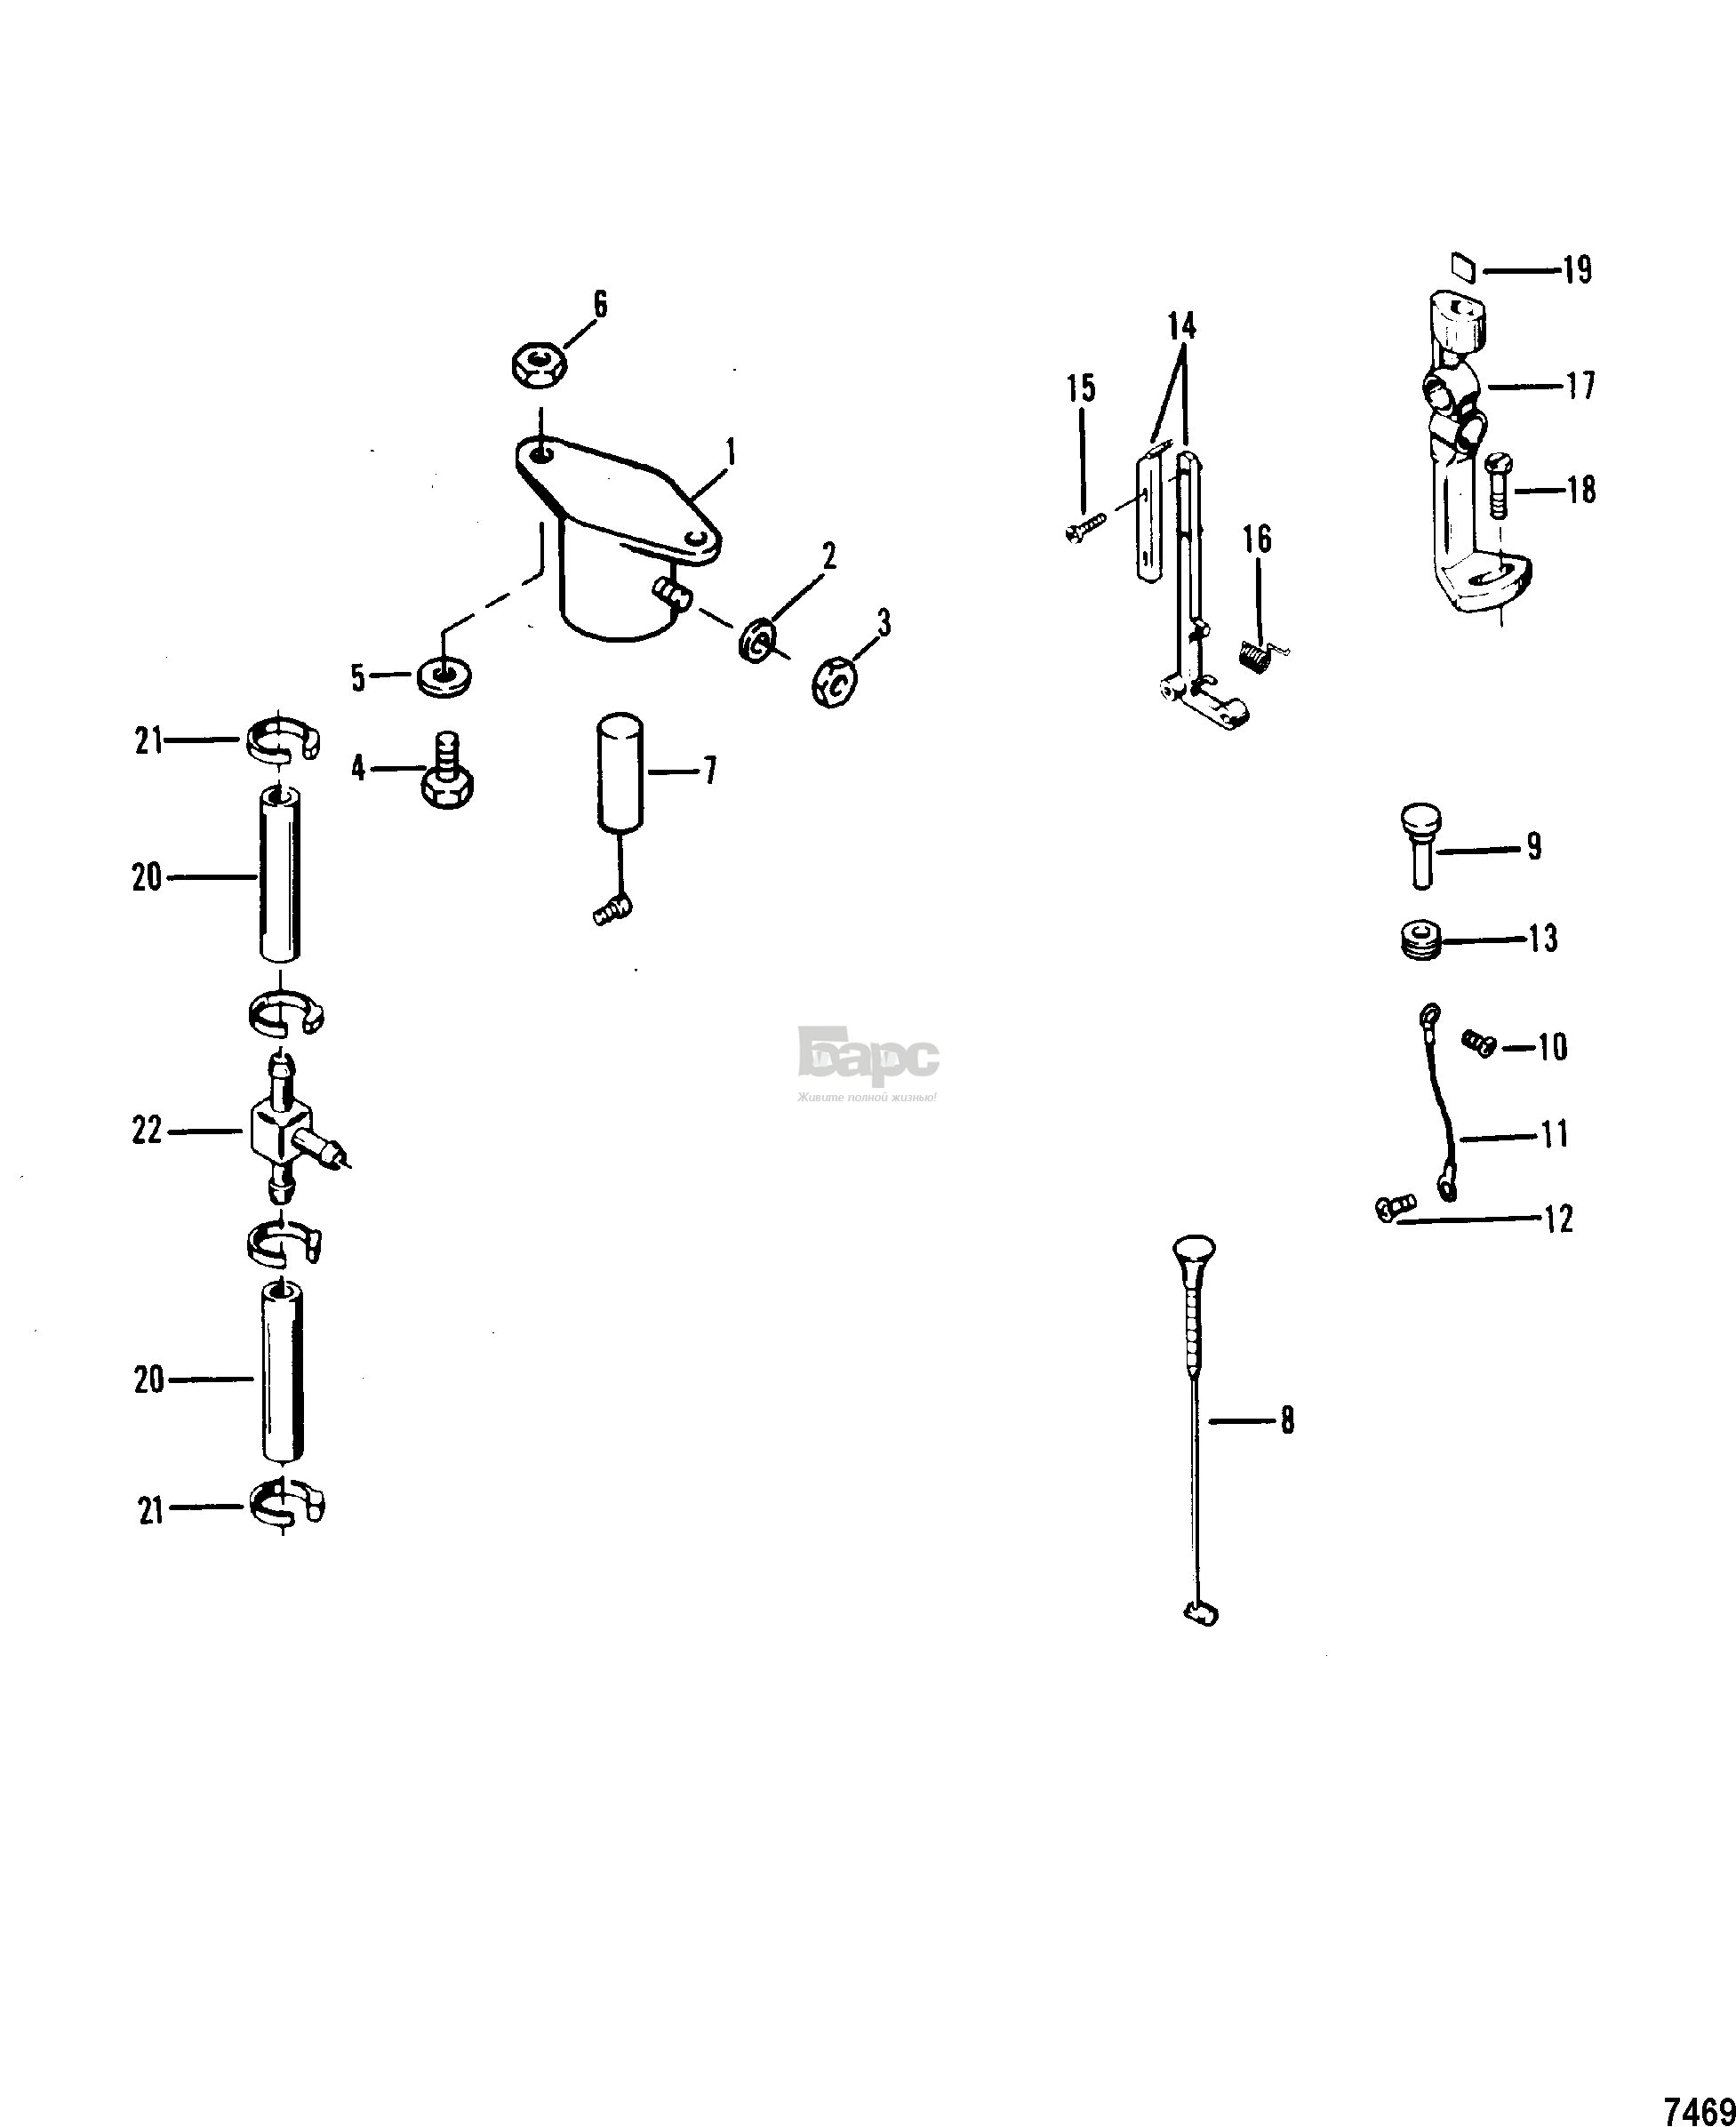 Carburetor Linkage/Choke Solenoid